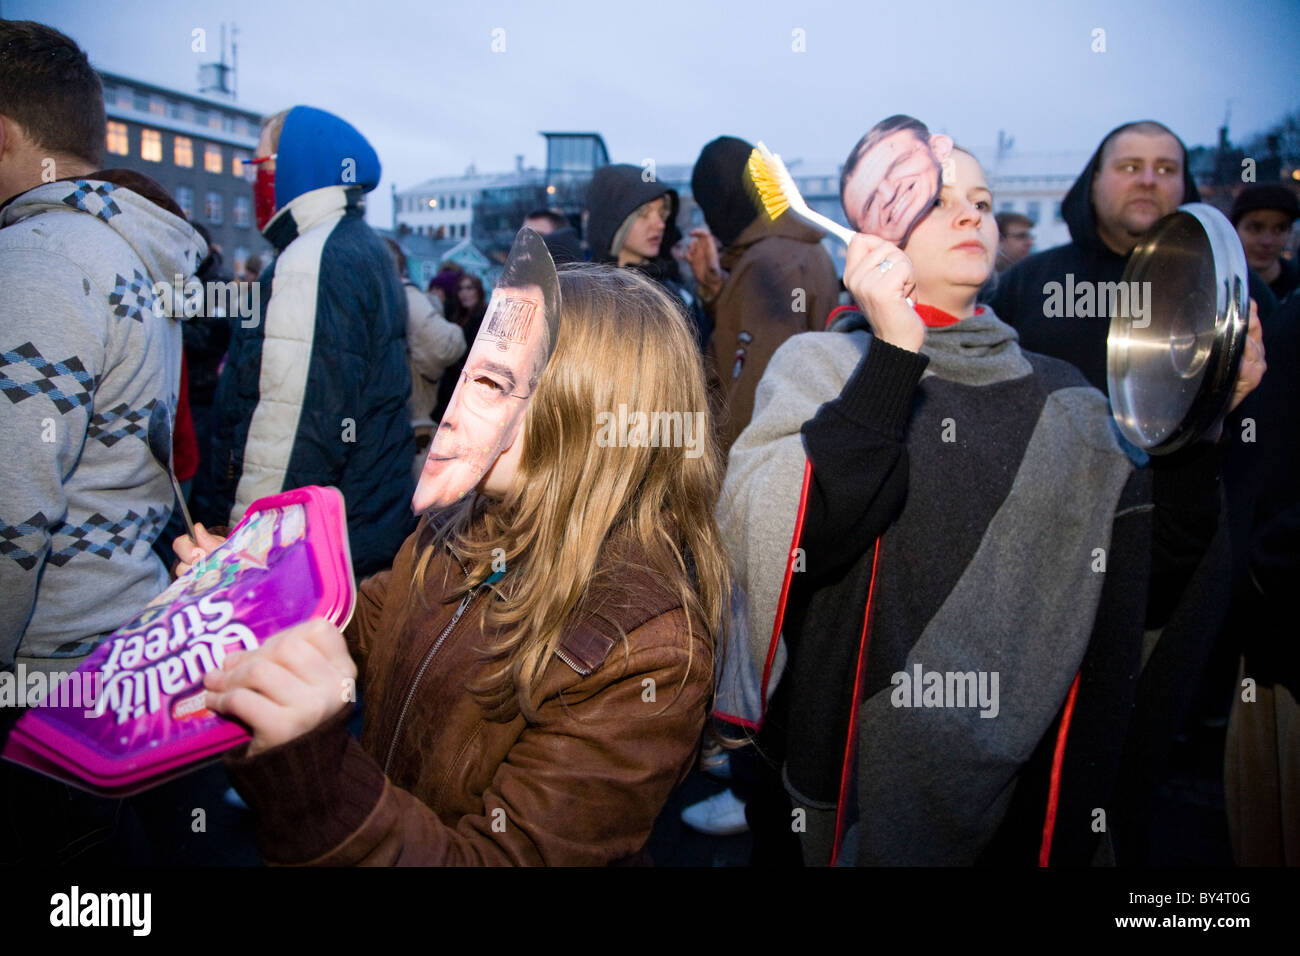 Le centre-ville de Reykjavík, Islande : protestations ont continué le mercredi 21/01/2009, des manifestants pacifiques en faisant du bruit avec les casseroles et poêles Banque D'Images